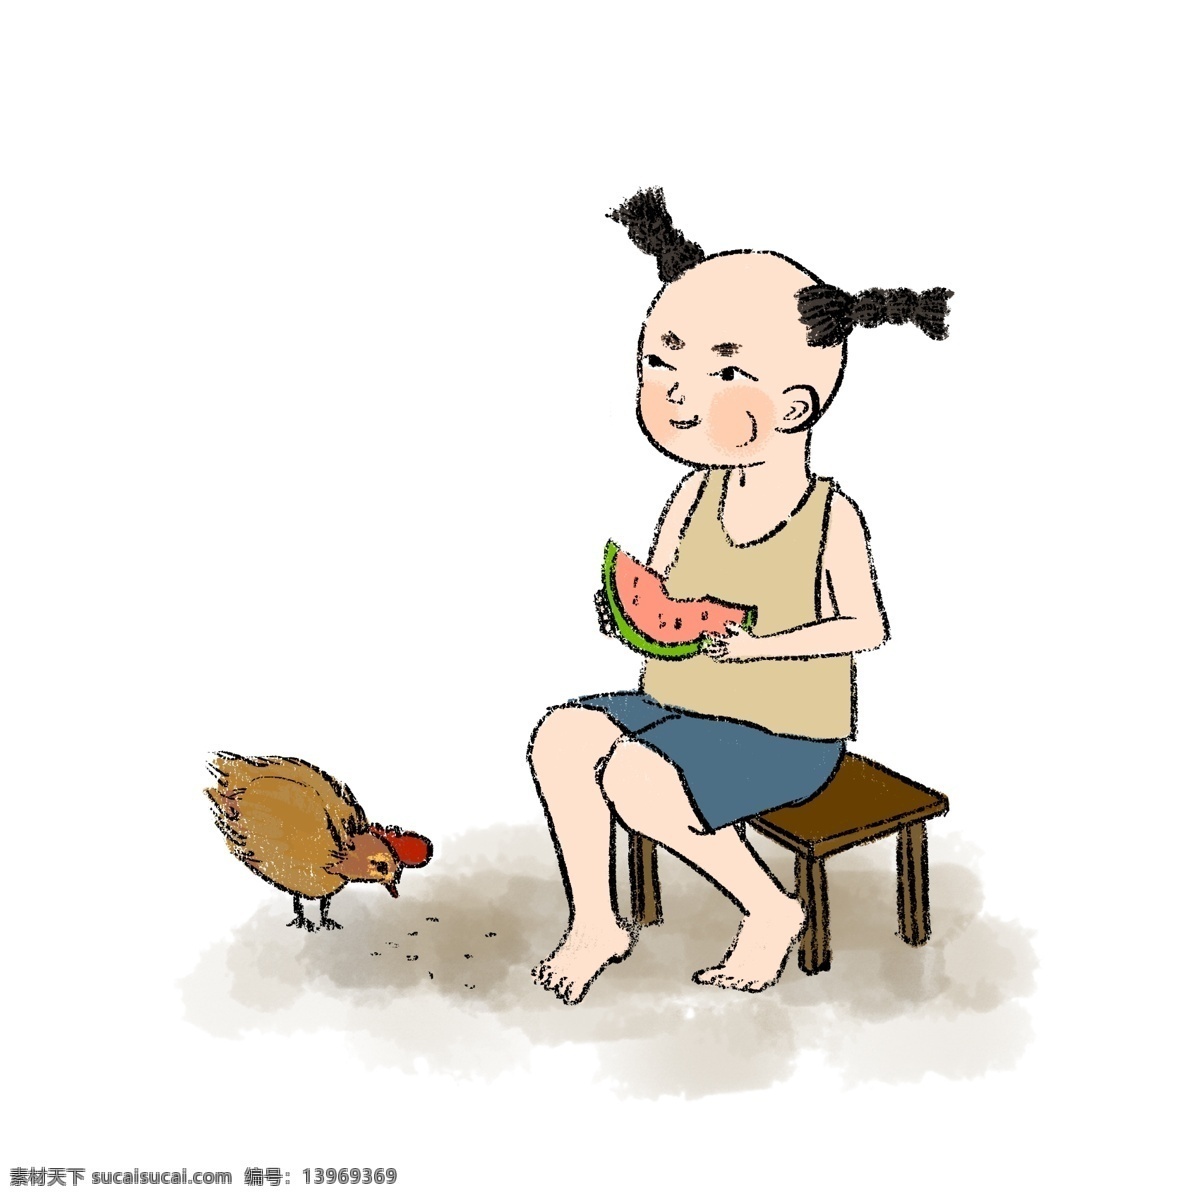 夏季 孩童 吃 西瓜 水墨画 孩童吃西瓜 坐板凳 鸡吃米 童趣